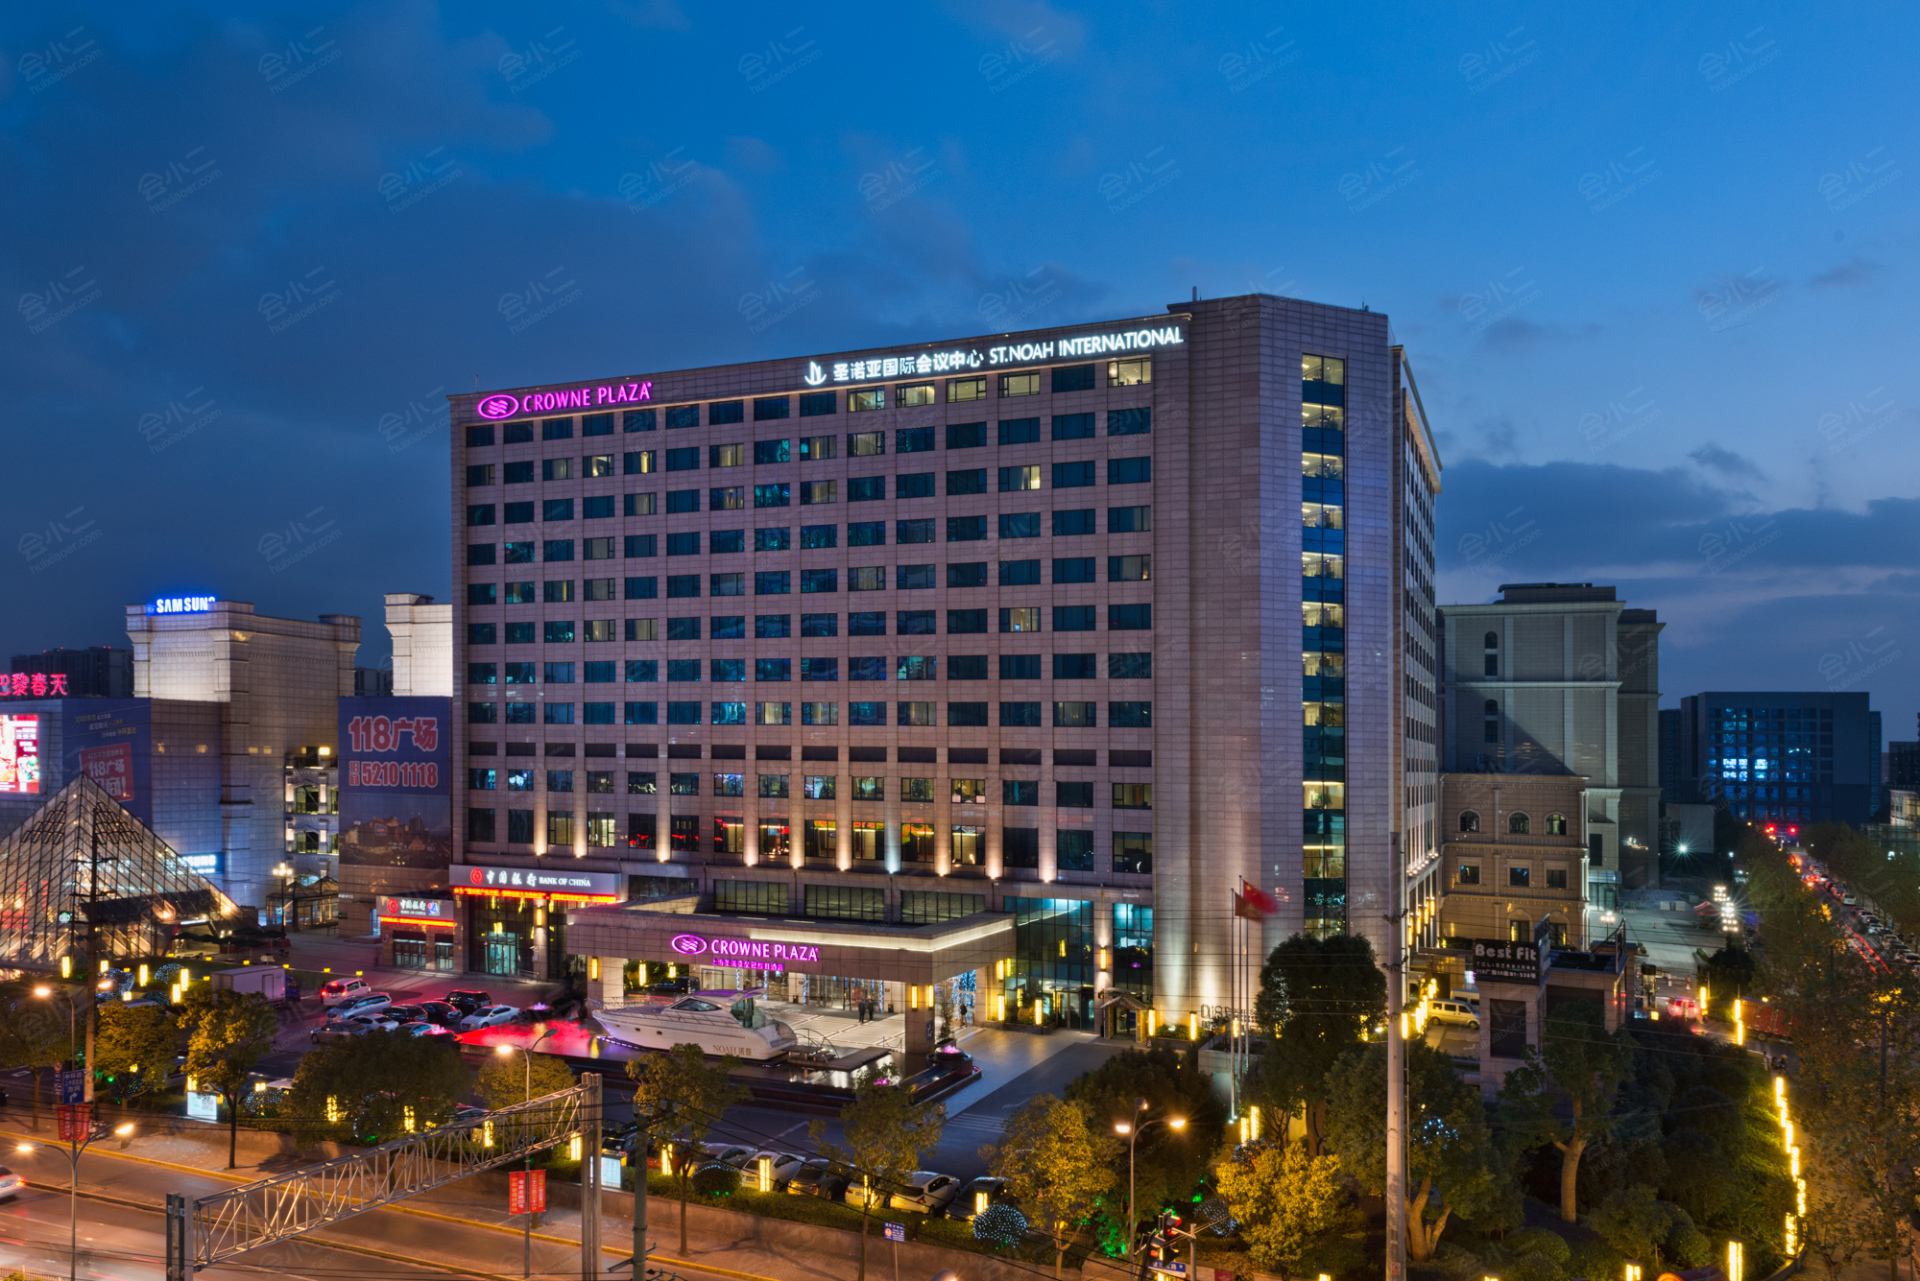 上海银星皇冠假日酒店 (上海市) - Crowne Plaza Shanghai, an IHG hotel - 862条旅客点评与比价